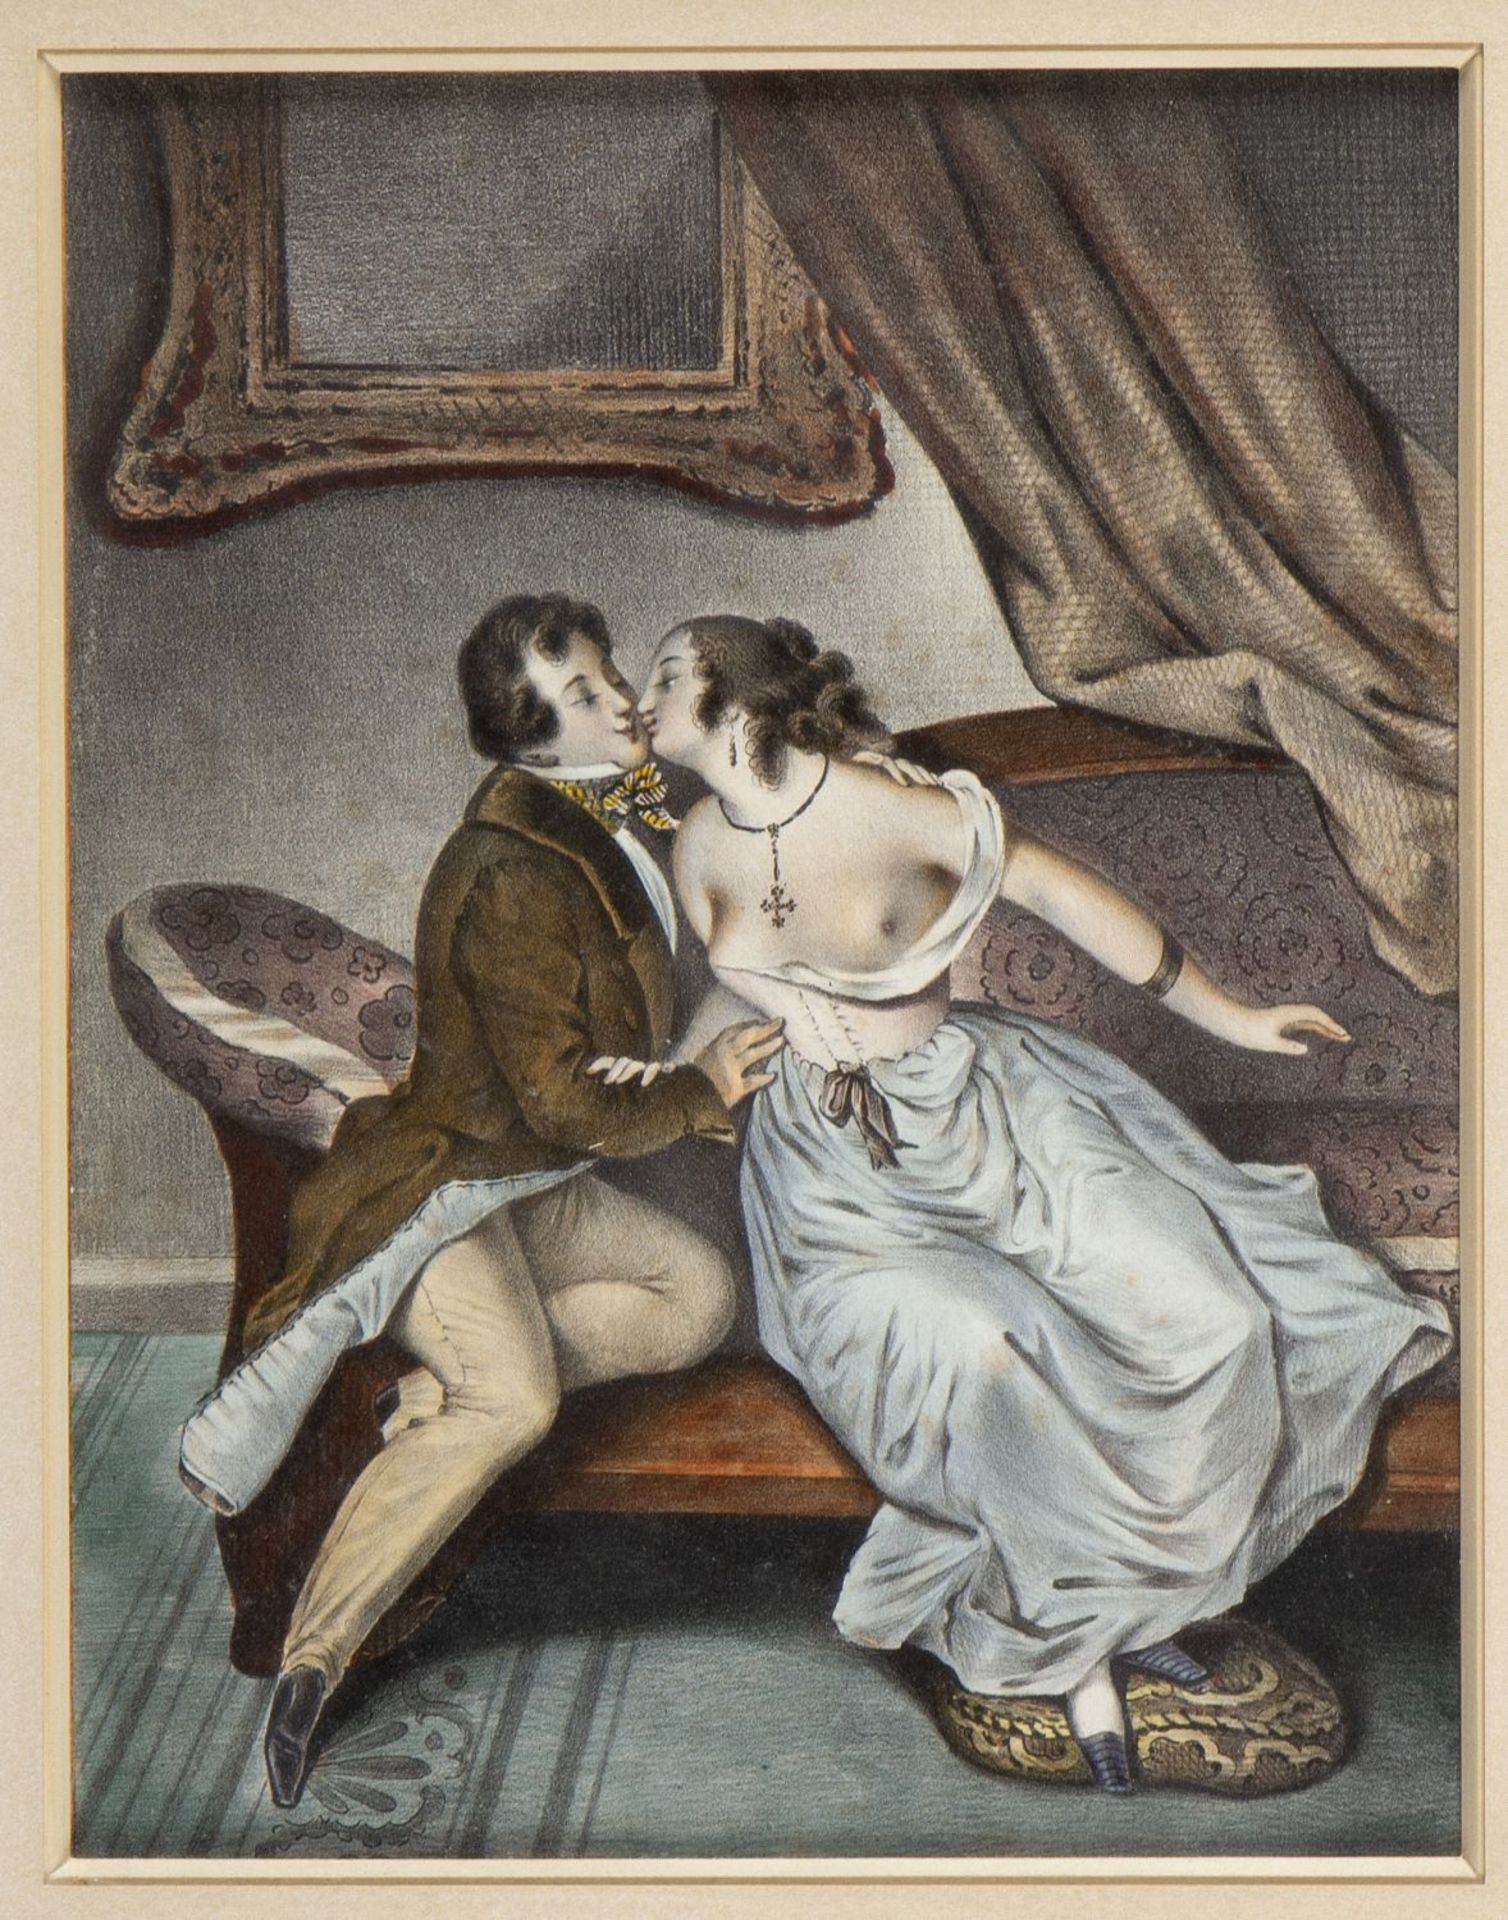 Unbekannt, Ende 19. Jh. Der Kuss. Schattenriss von Johann W. Goethe. 1 kol. Radierung. 1 Scherenschn - Bild 2 aus 3